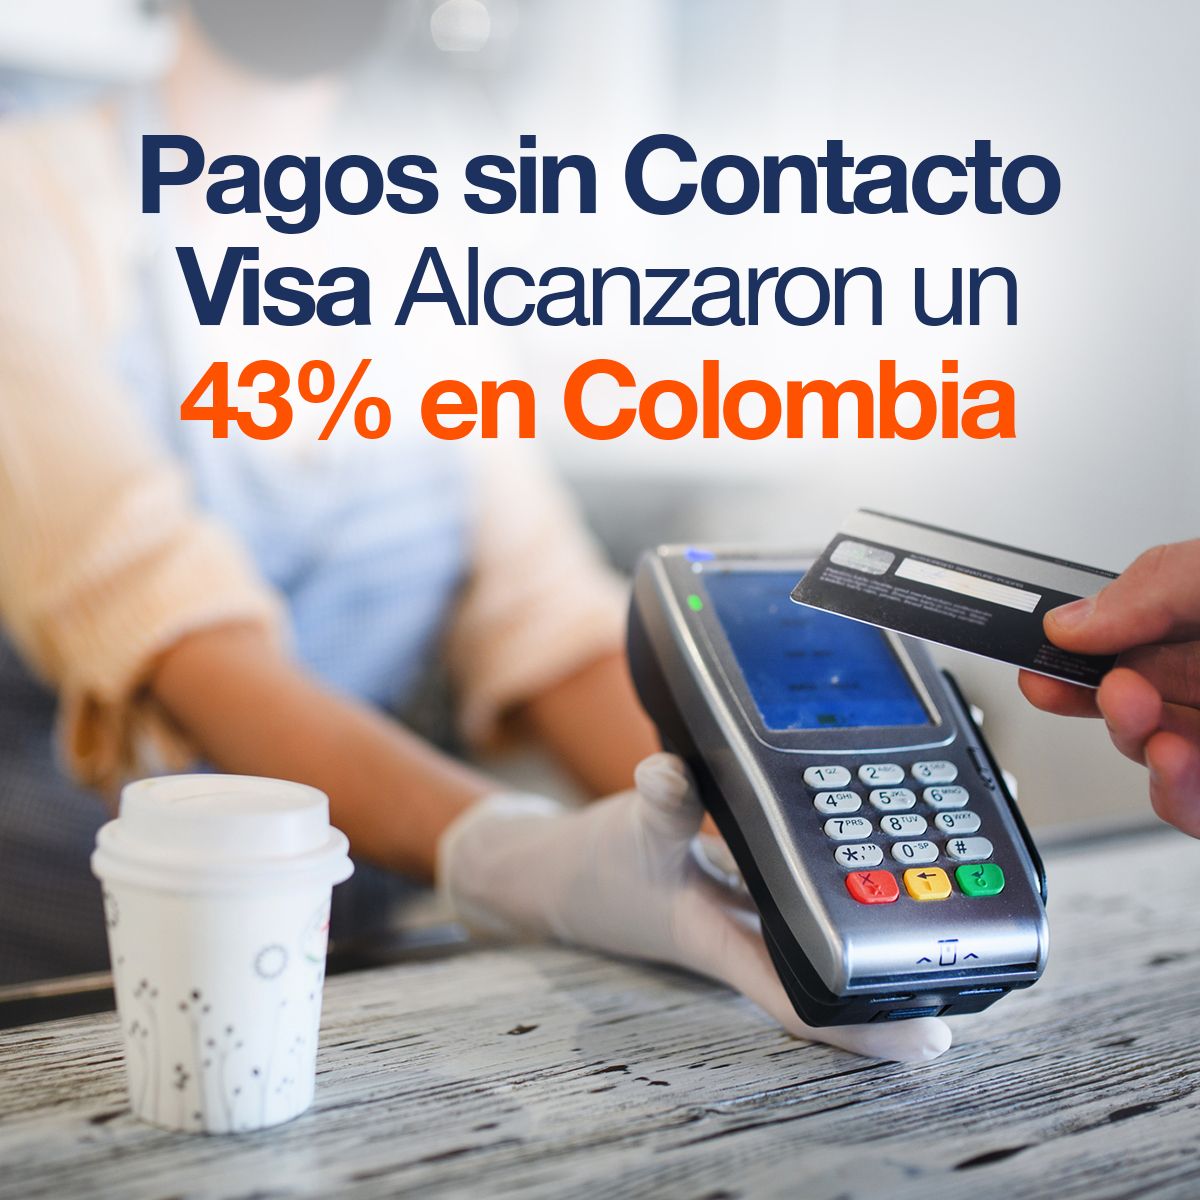 Pagos sin Contacto Visa Alcanzaron un 43% en Colombia